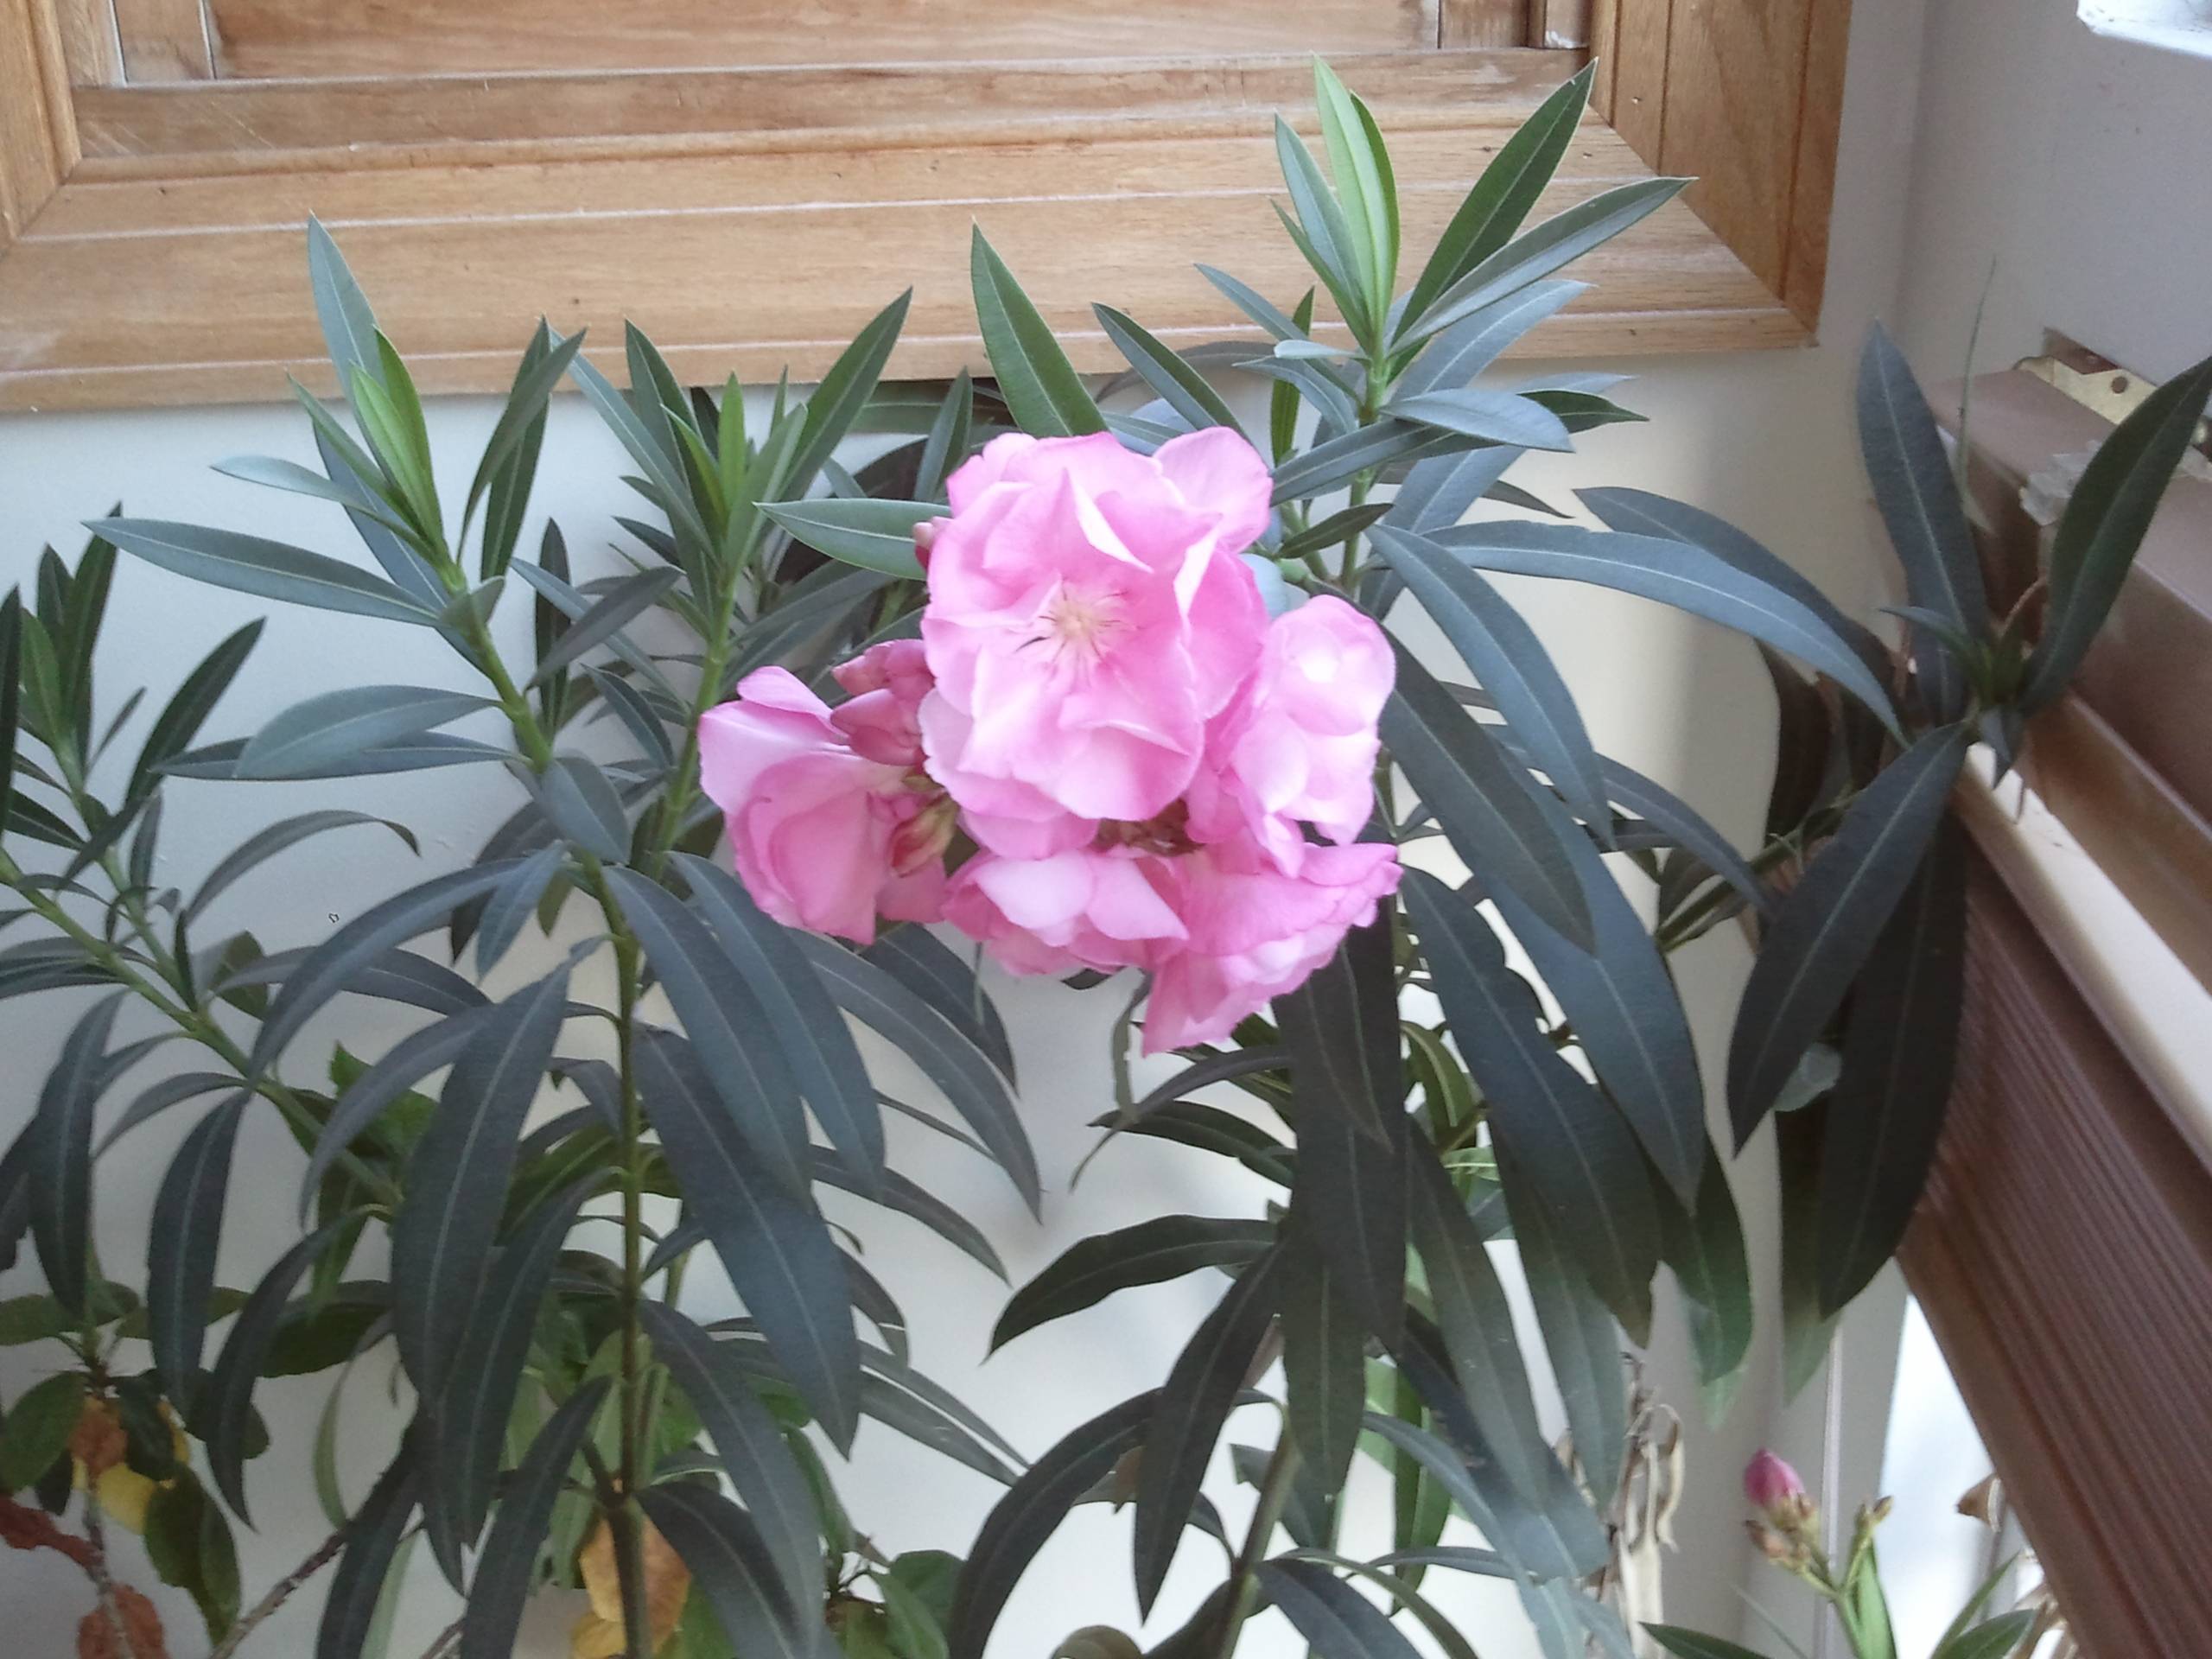 Олеандр цветок - как ухаживать за ядовитым олеандром дома?